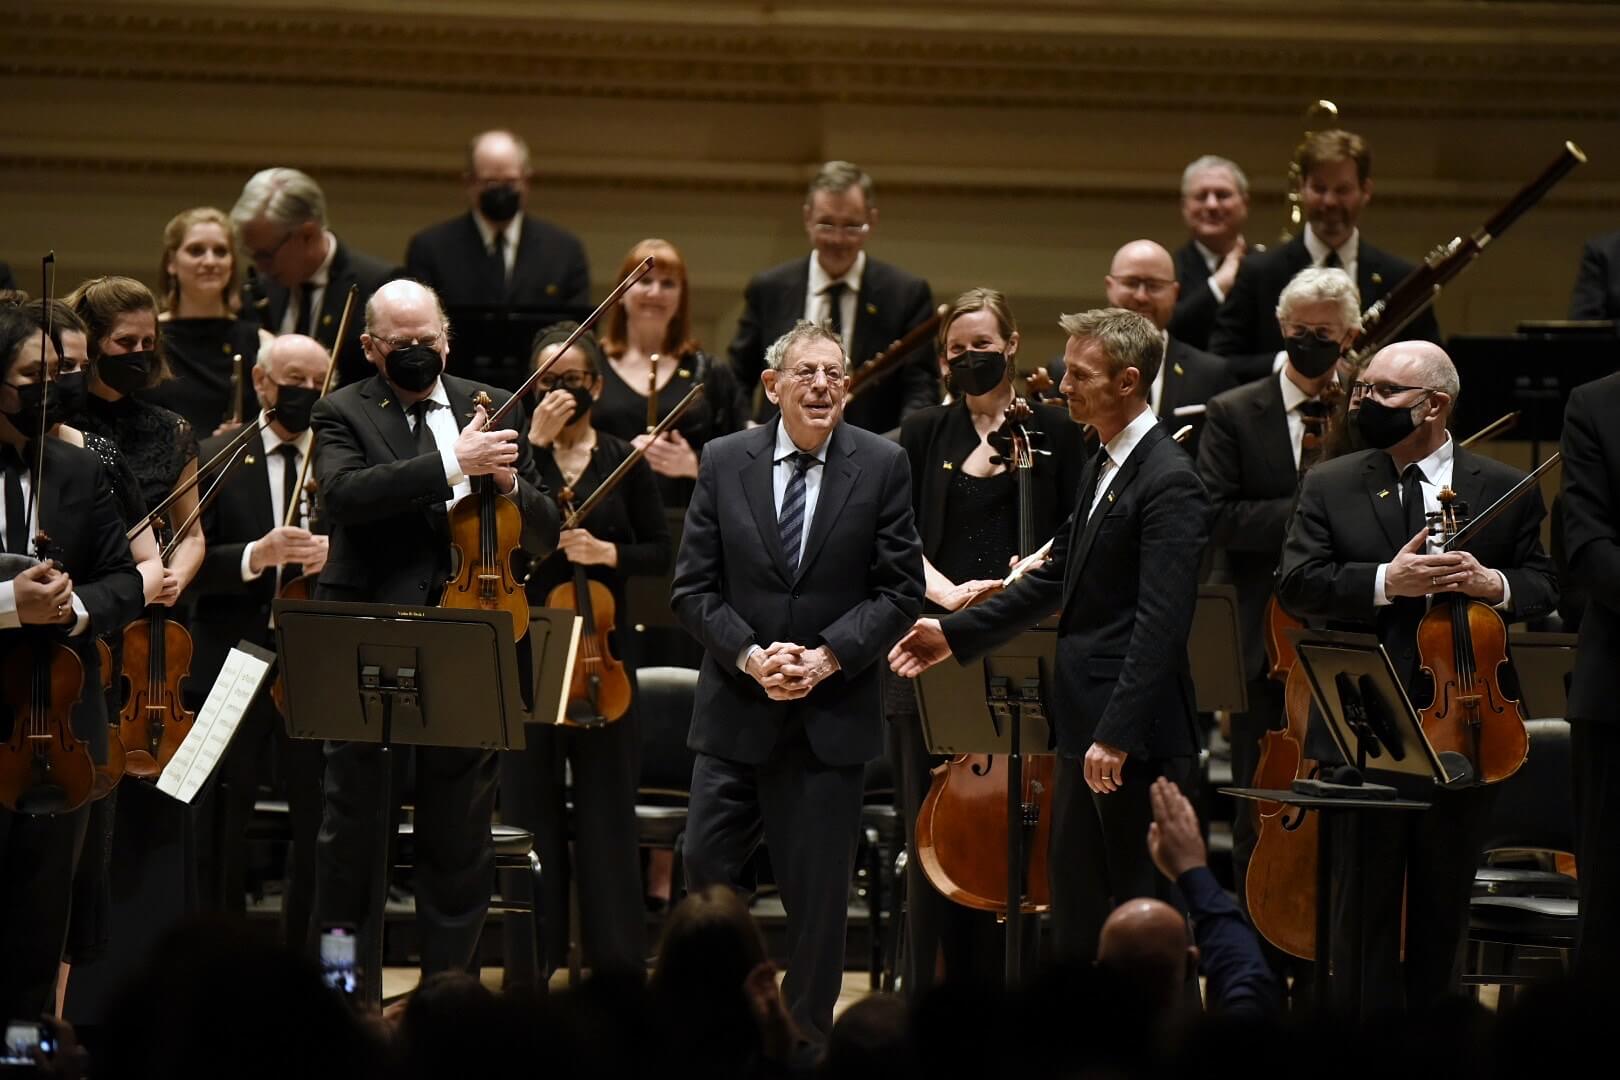 Philip Glass recevant les applaudissements du public et de l'orchestre lors de la première américaine de sa Symphonie no 13 donnée par l'Orchestre de CNA et Alexander Shelley au Carnegie Hall (Phot0 : Dominick Mastrangelo)